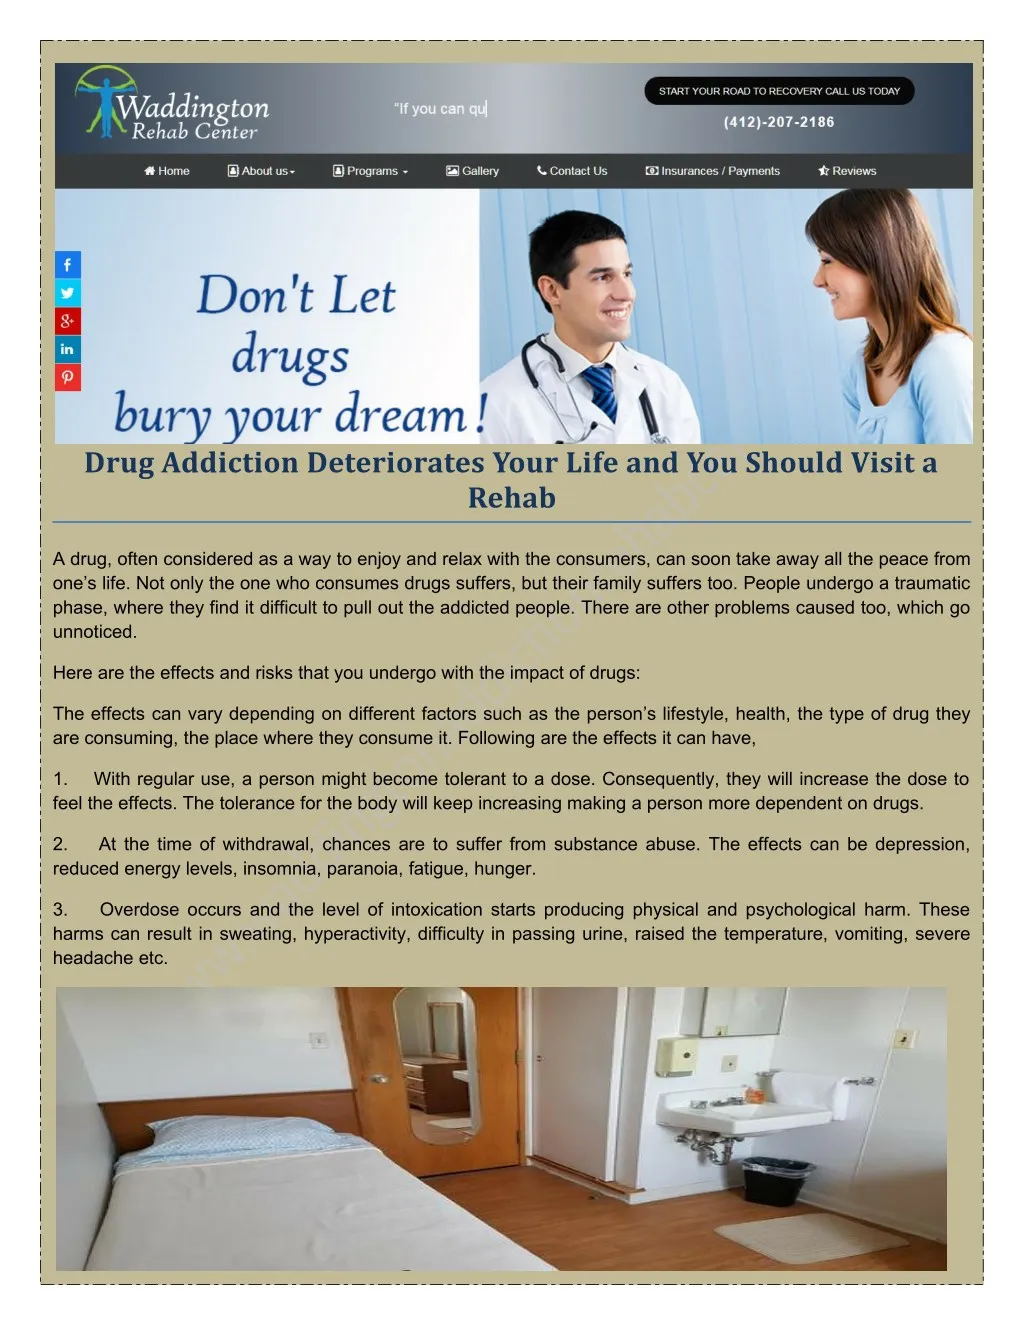 drug addiction deteriorates your life